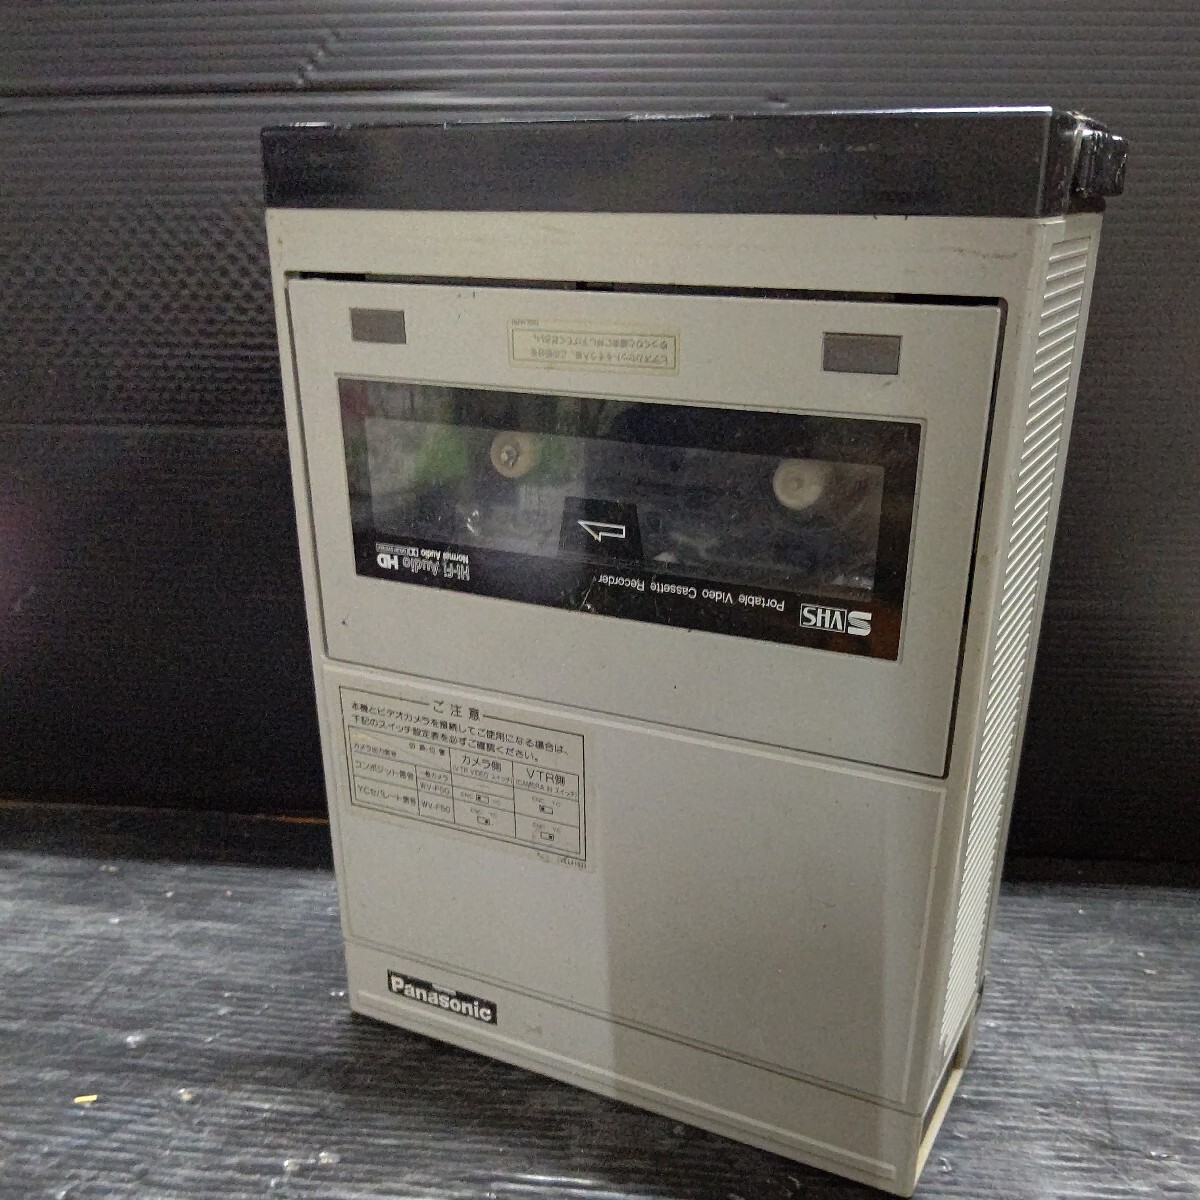  продаю как нерабочий  　Panasonic　S-VHS　AG-7400　 портативный   видеомагнитофон ...　